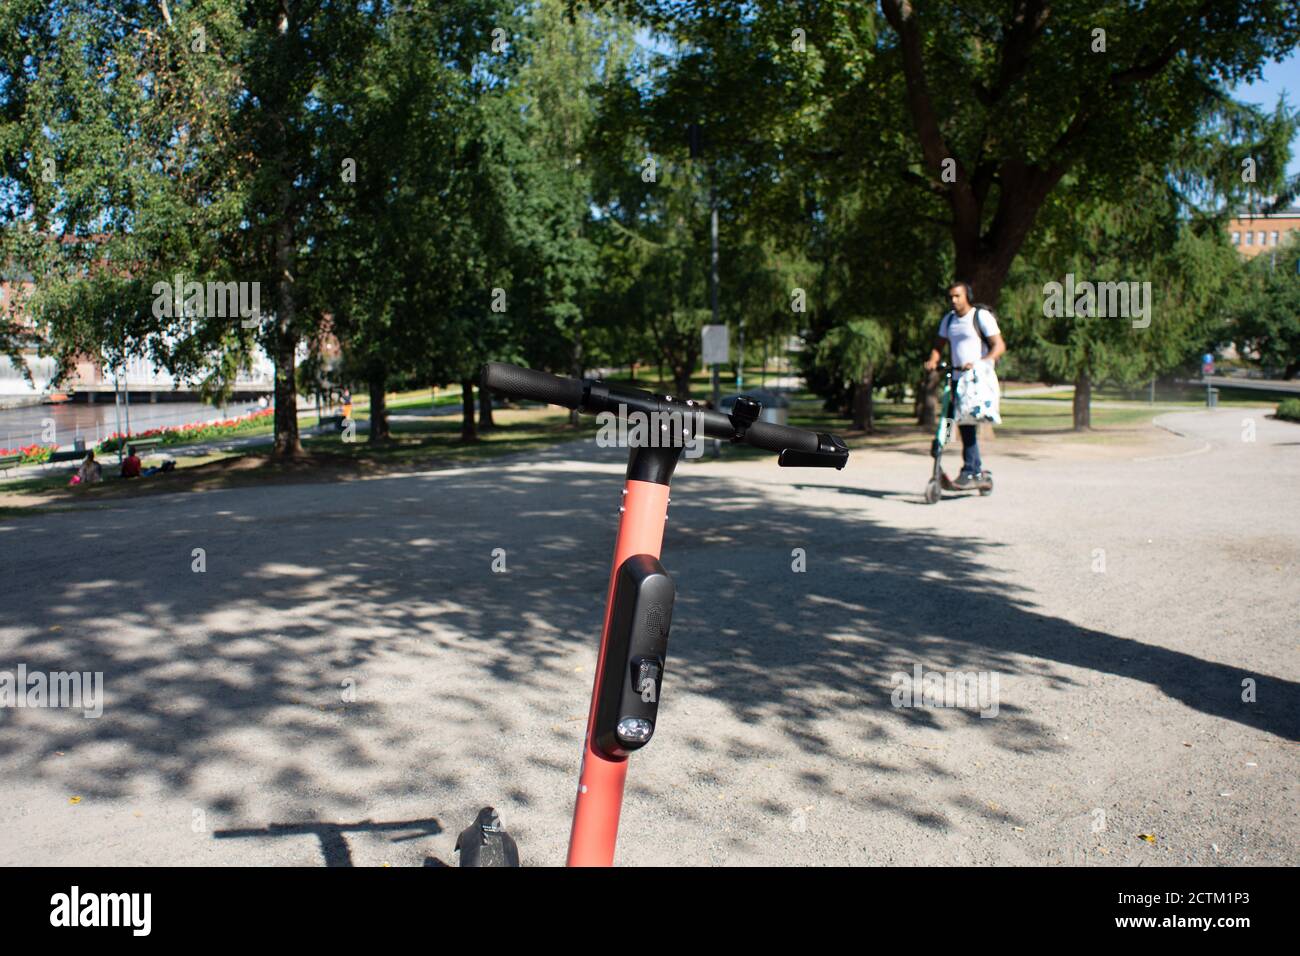 Tampere, Finnland - 26. JULI 2019. Ein allein fahrend Mann ein Elektroroller im öffentlichen Park an einem sonnigen Sommertag. Stockfoto